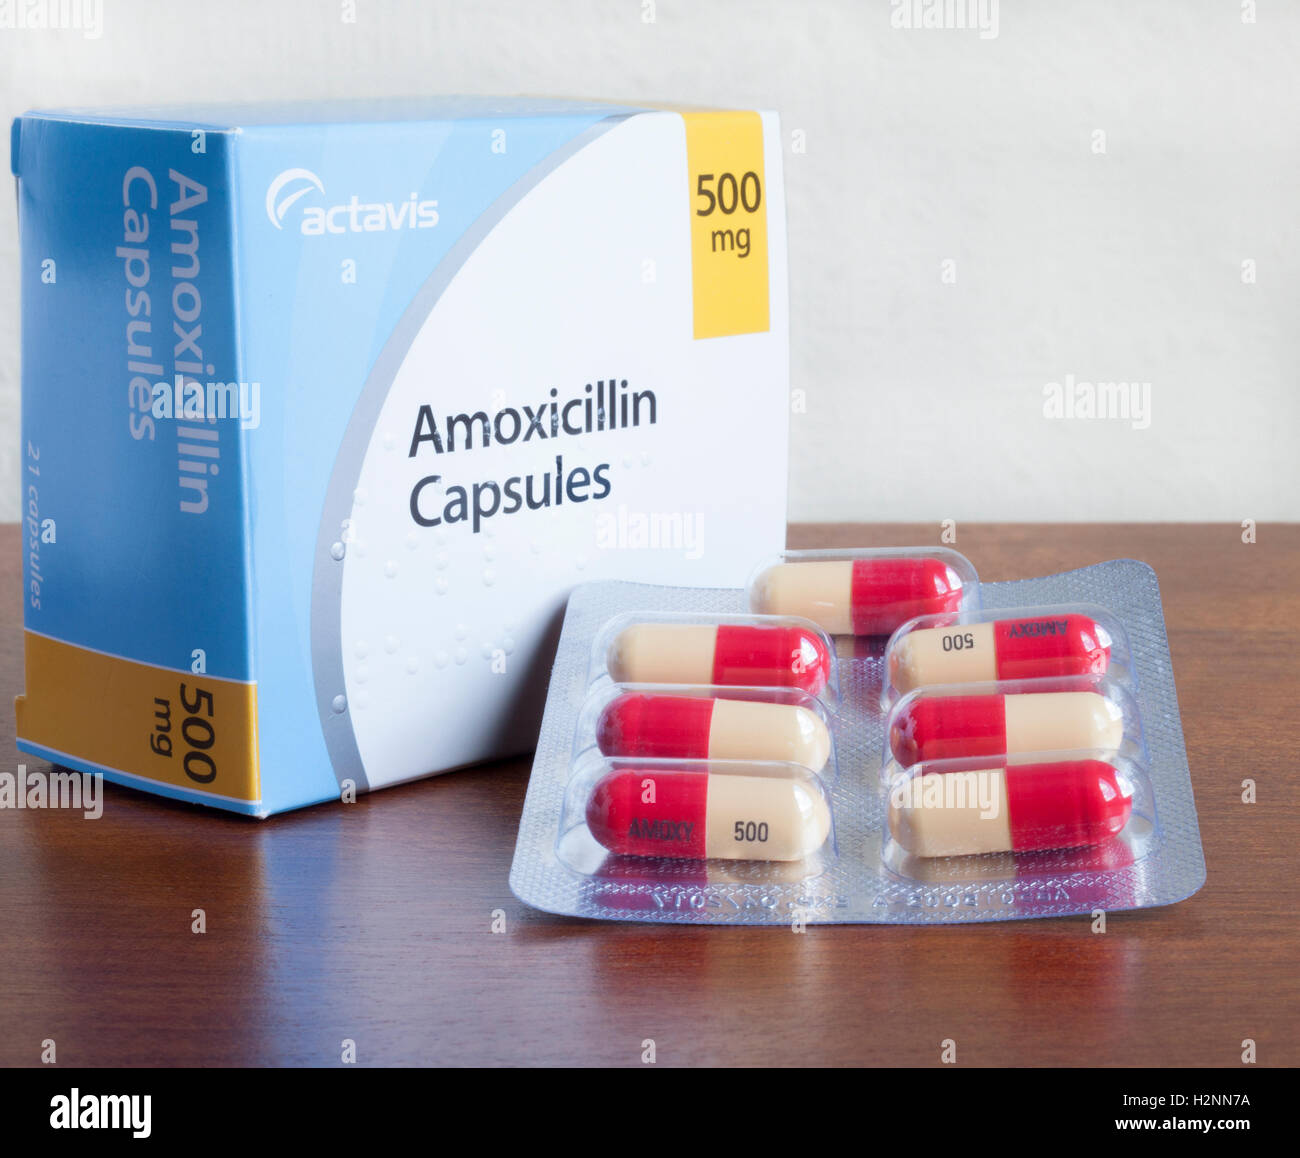 Foto einer Box von Amoxicillin (Penicillin Antibiotikum) Kapseln produziert von Actavis. Einige Kapseln sind in Bubble Pack angezeigt. Blindenschrift auf der Box. Stockfoto